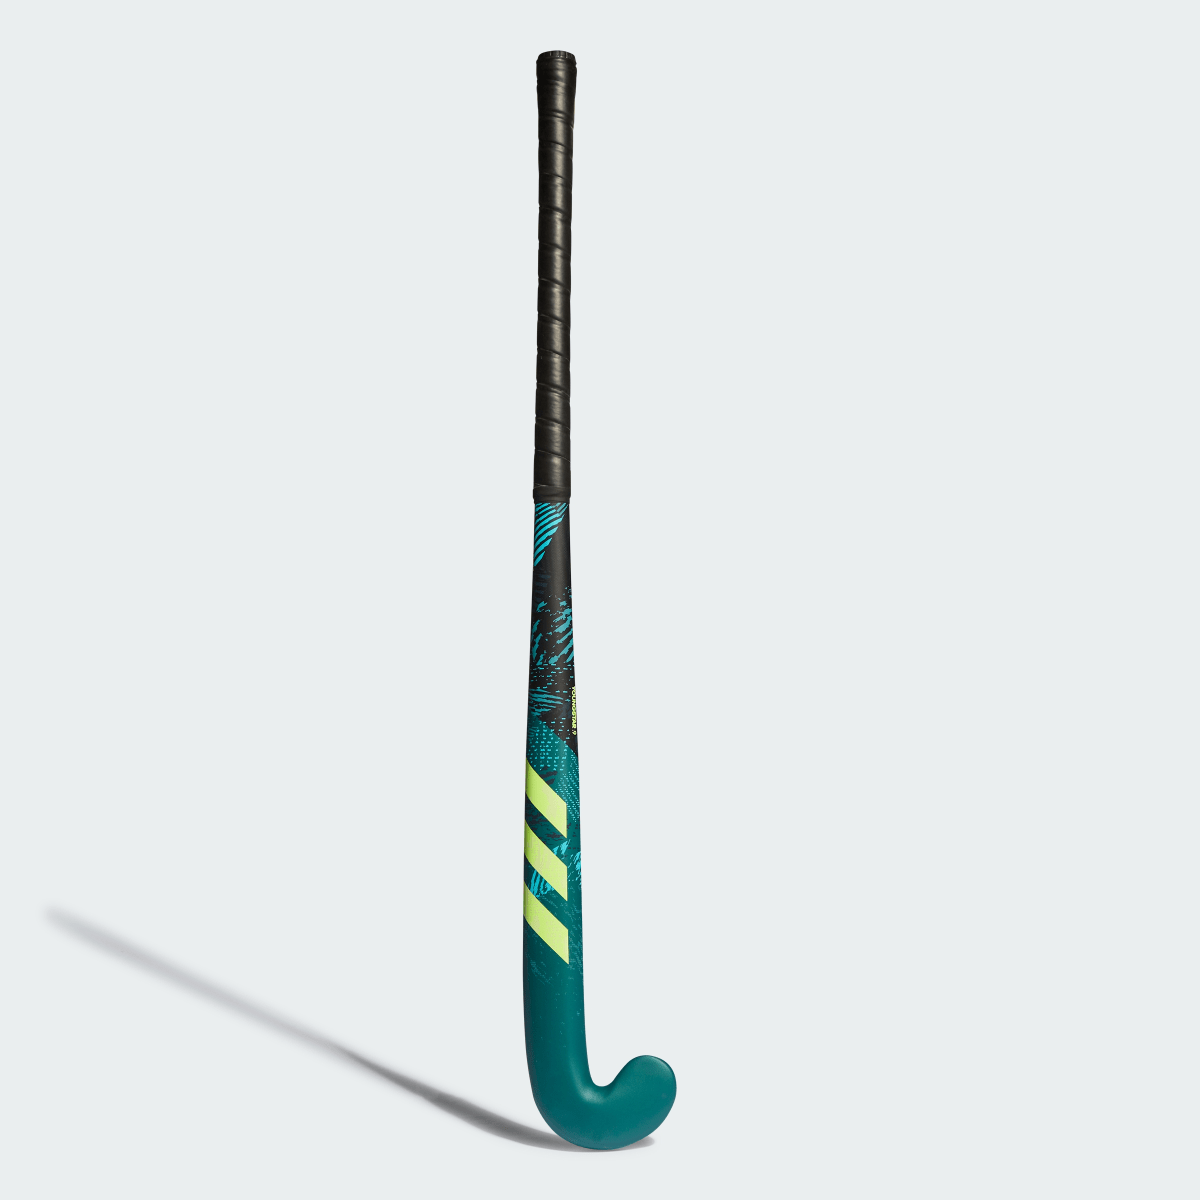 Adidas Stick de hockey hierba Youngstar.9 61 cm. 2